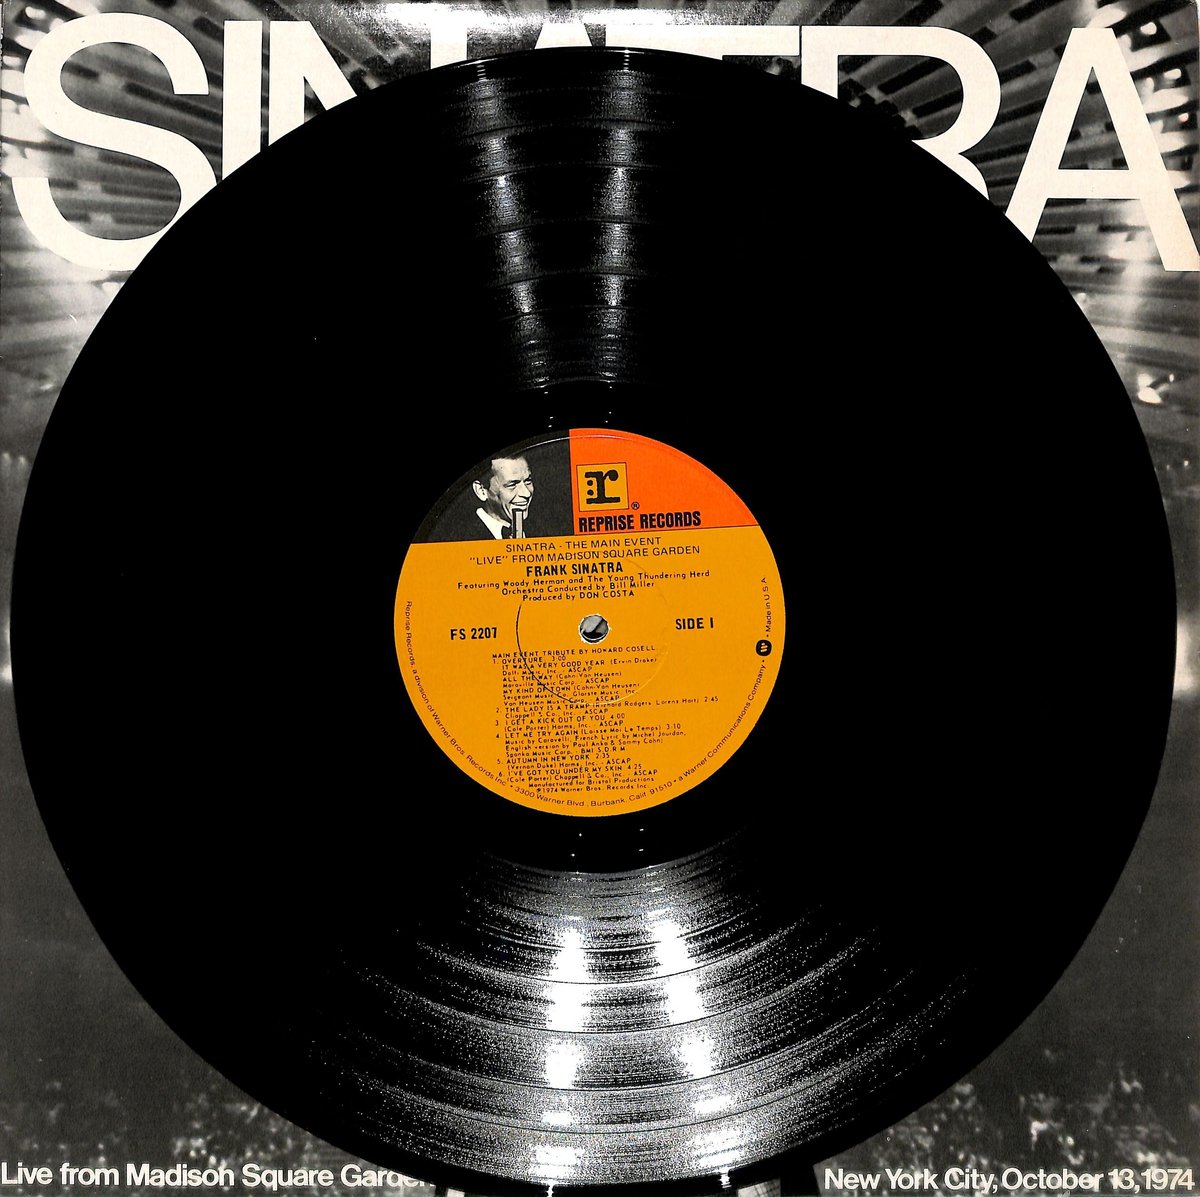 フランクシナトラ　ゴールデンダブル32　レコード　LP　2枚組シミあり〇歌詞